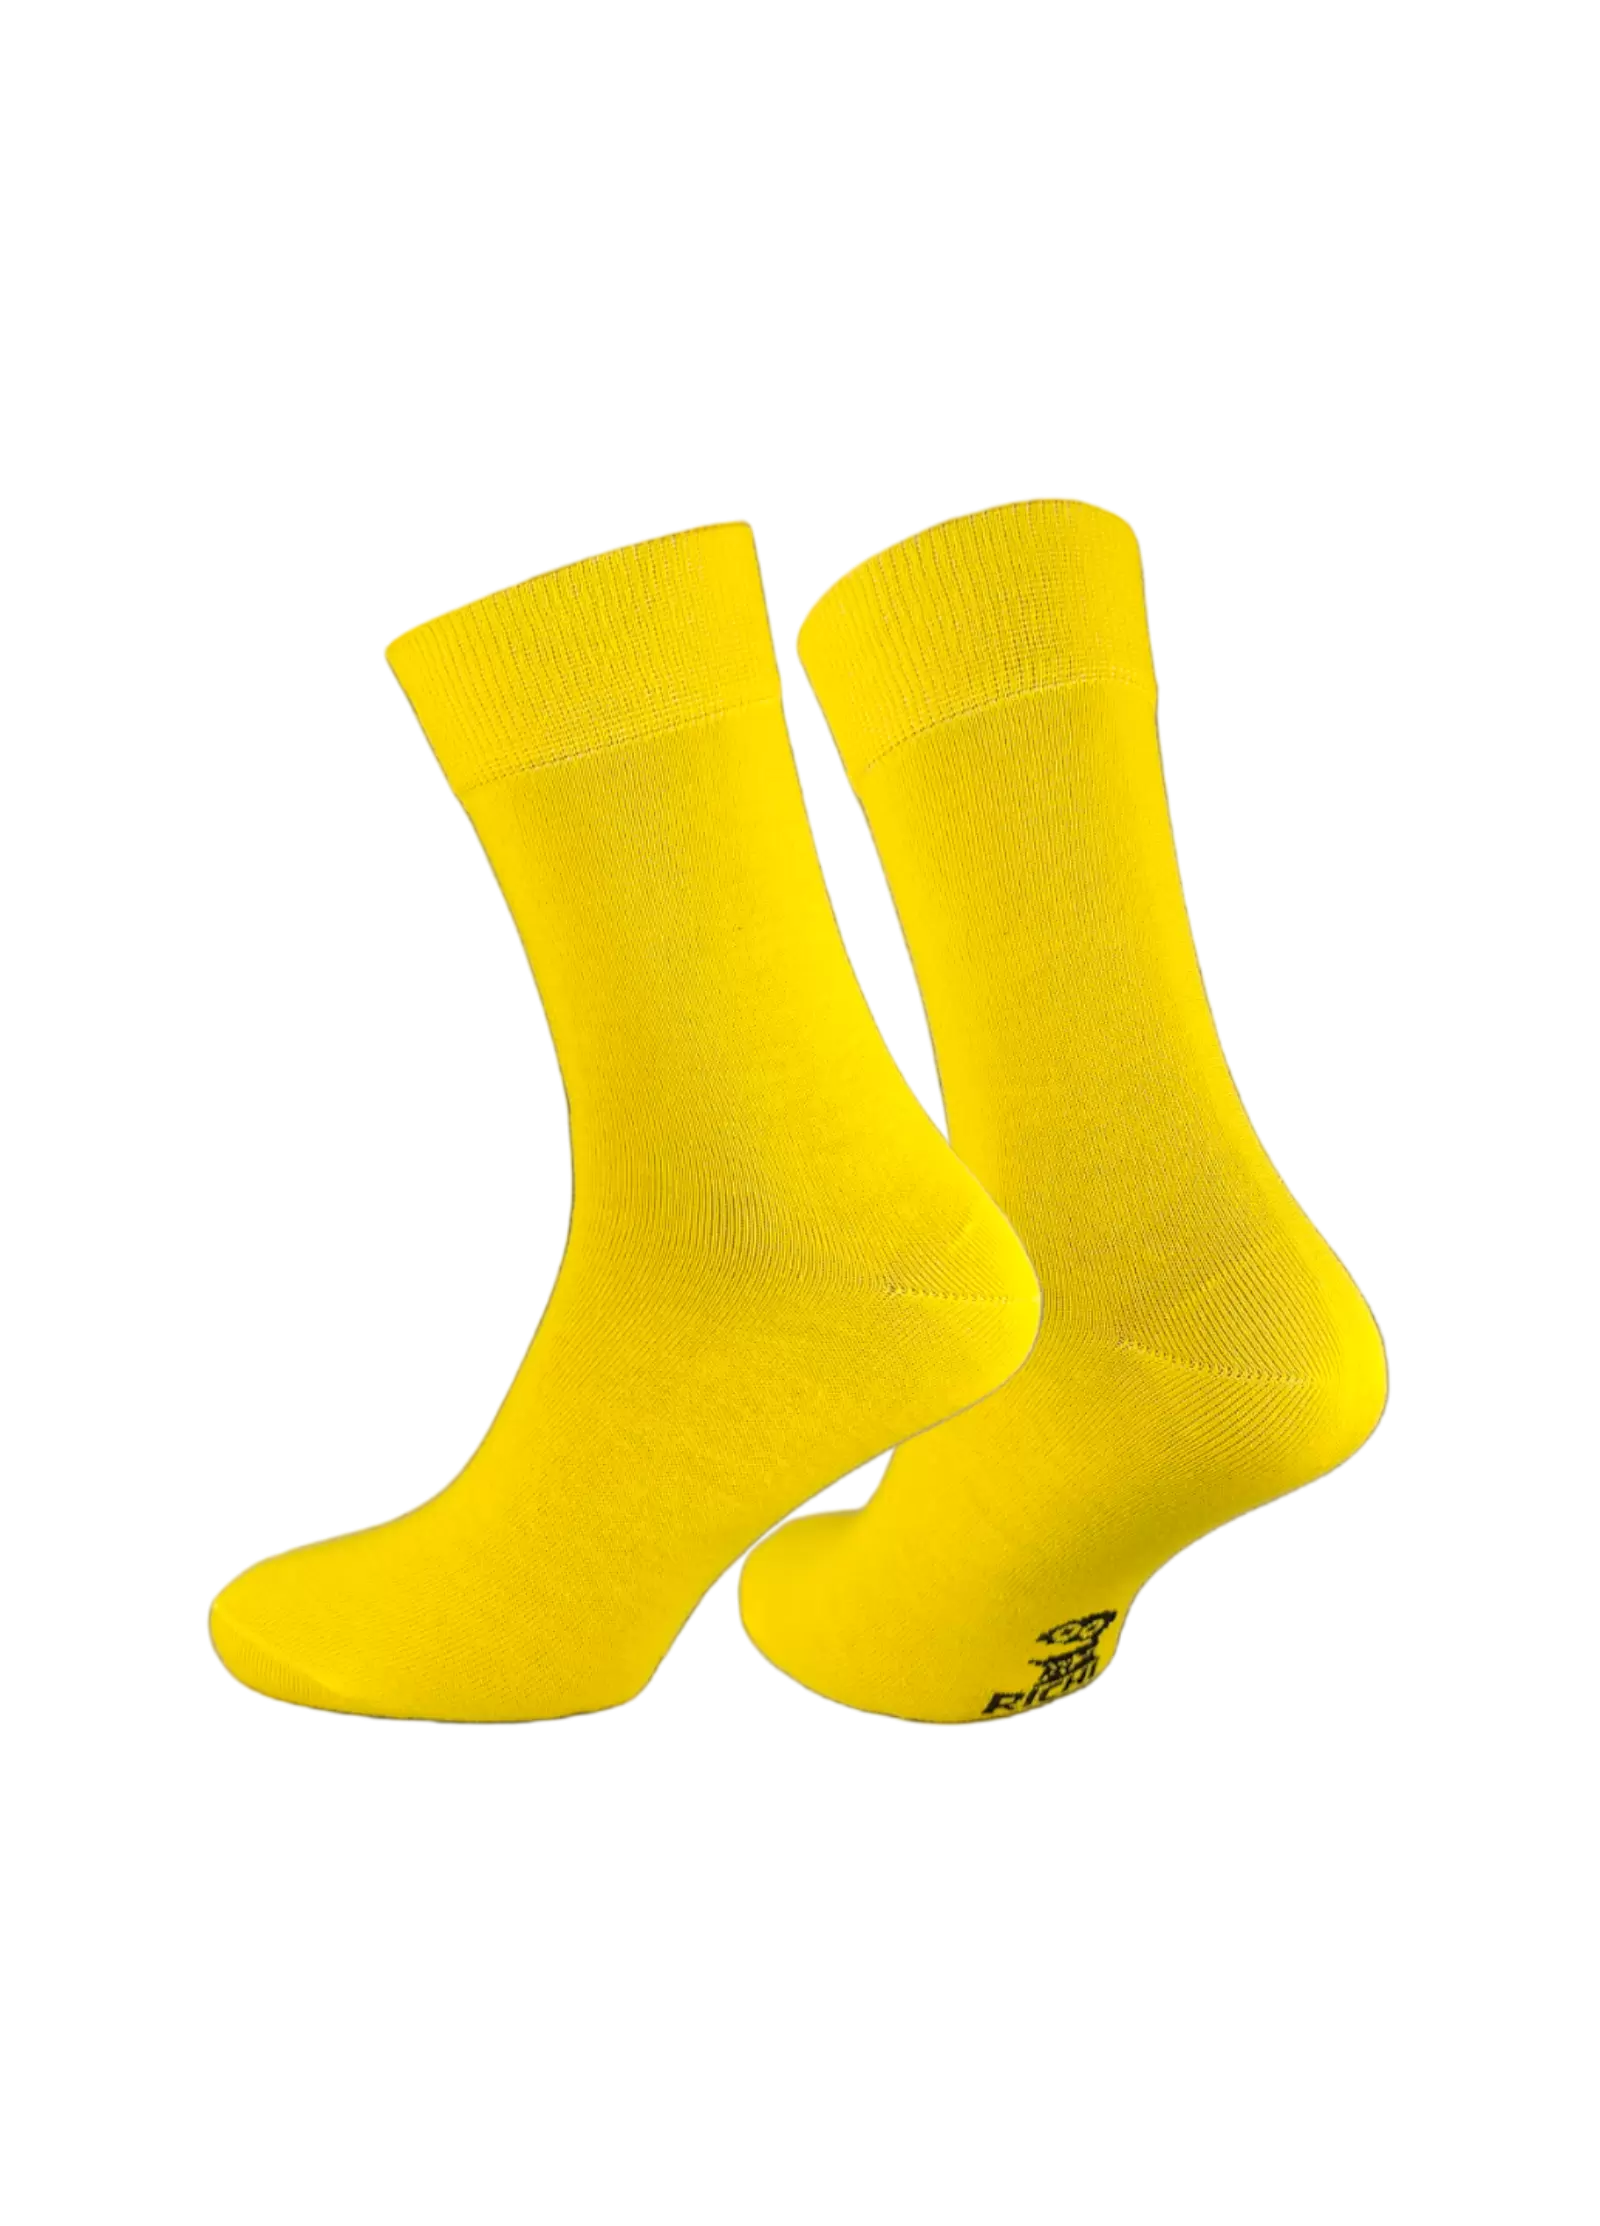 Довгі жовті шкарпетки, 6 пар